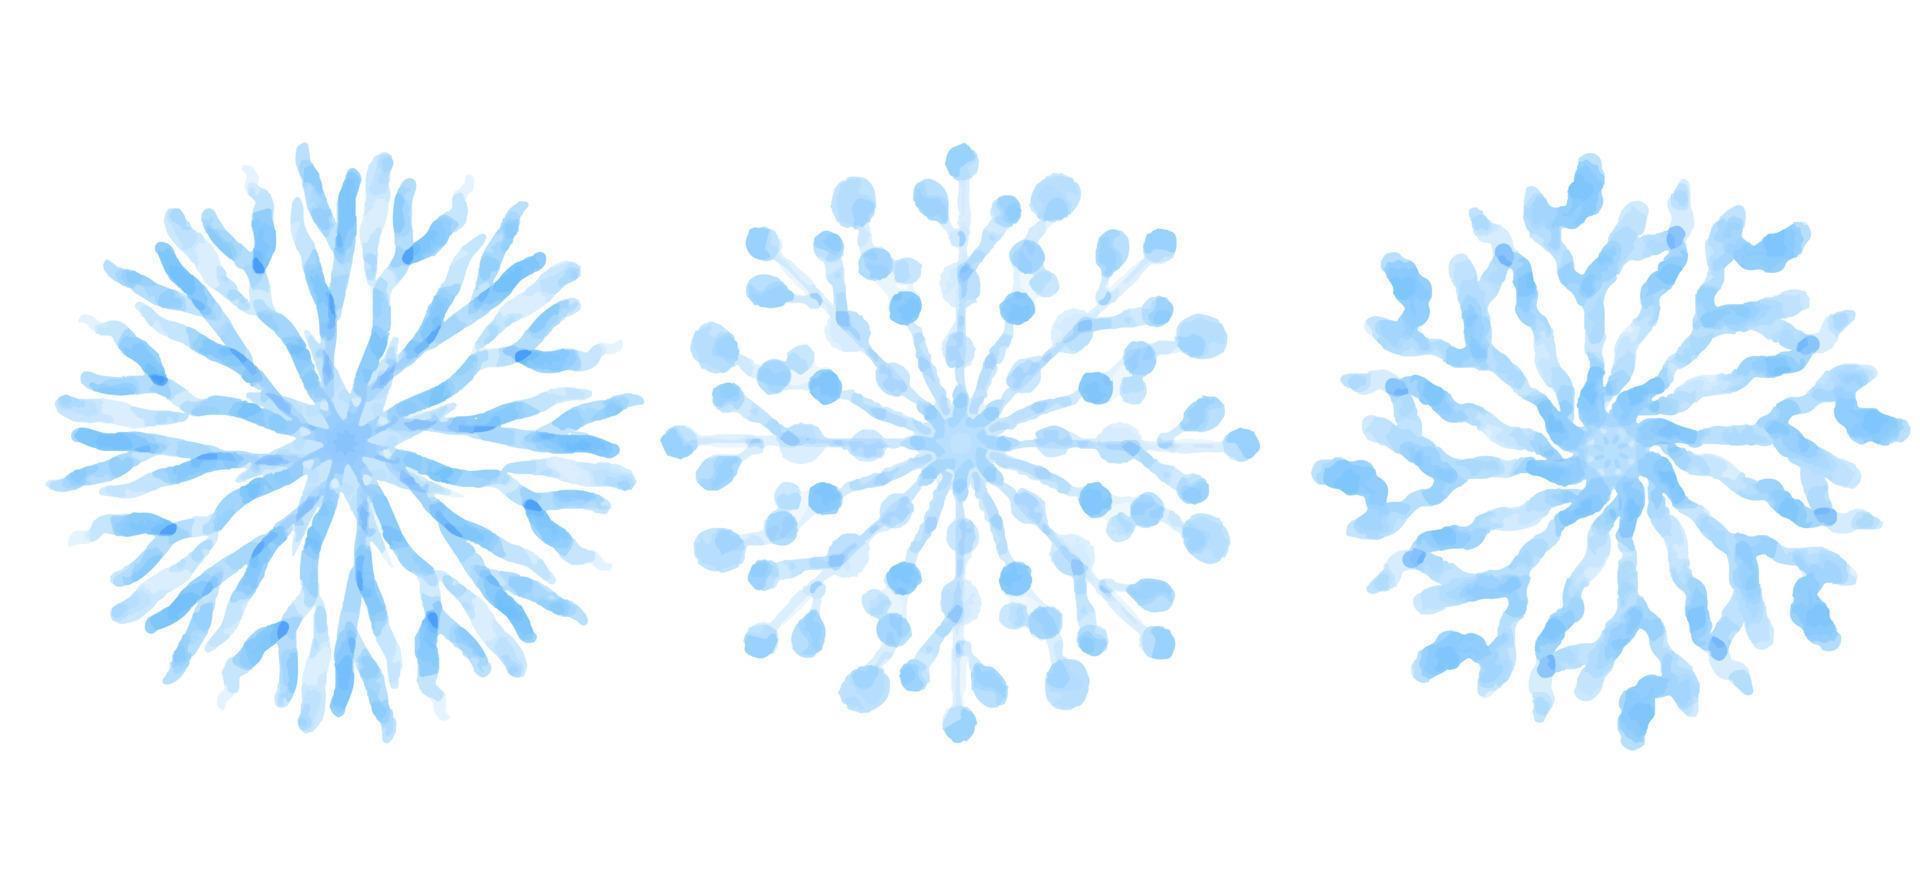 blå snöflingor isolerat på vit bakgrund, vektor illustration